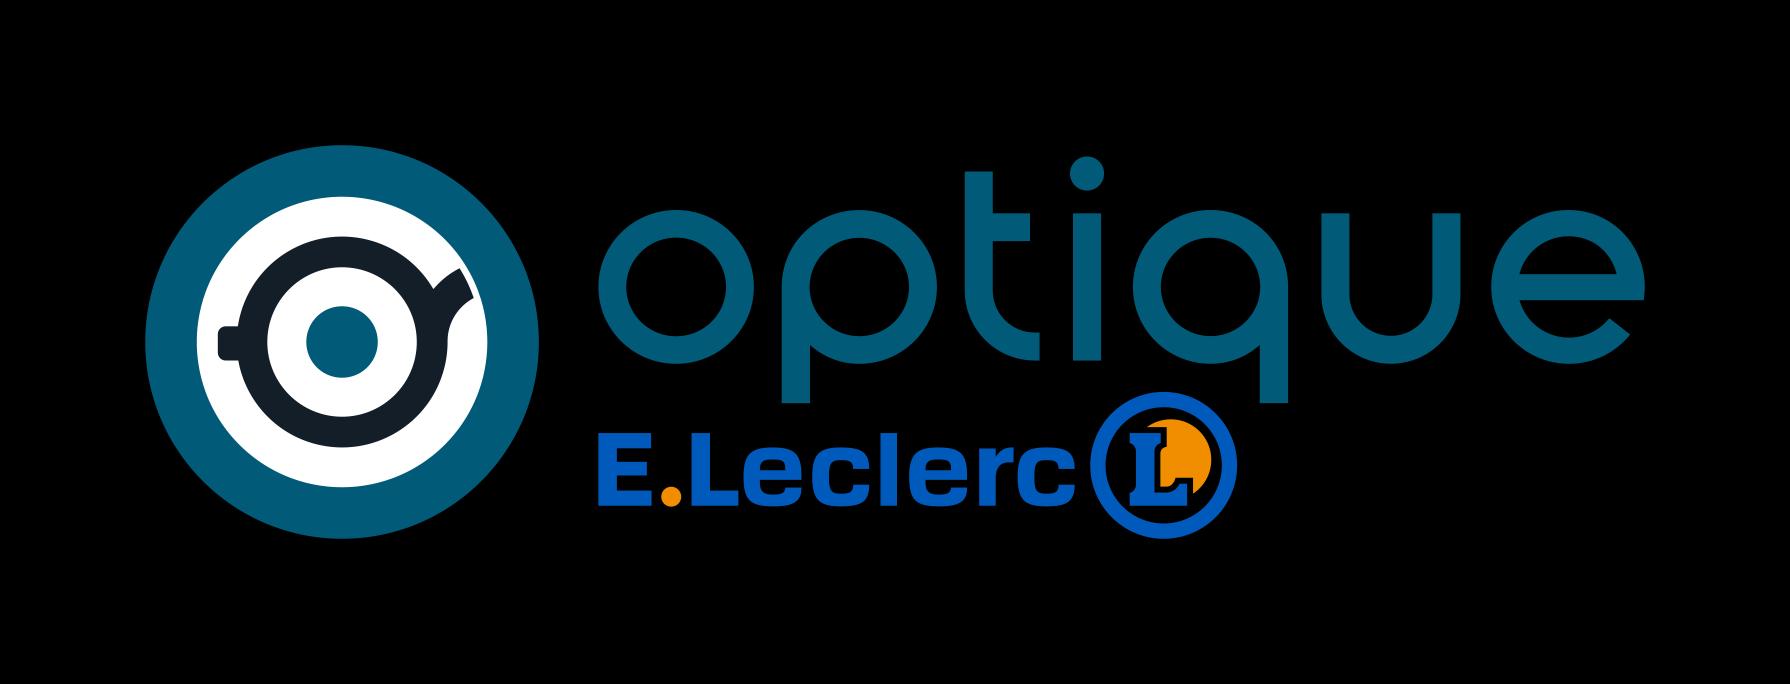 E.leclerc Optique Limoges